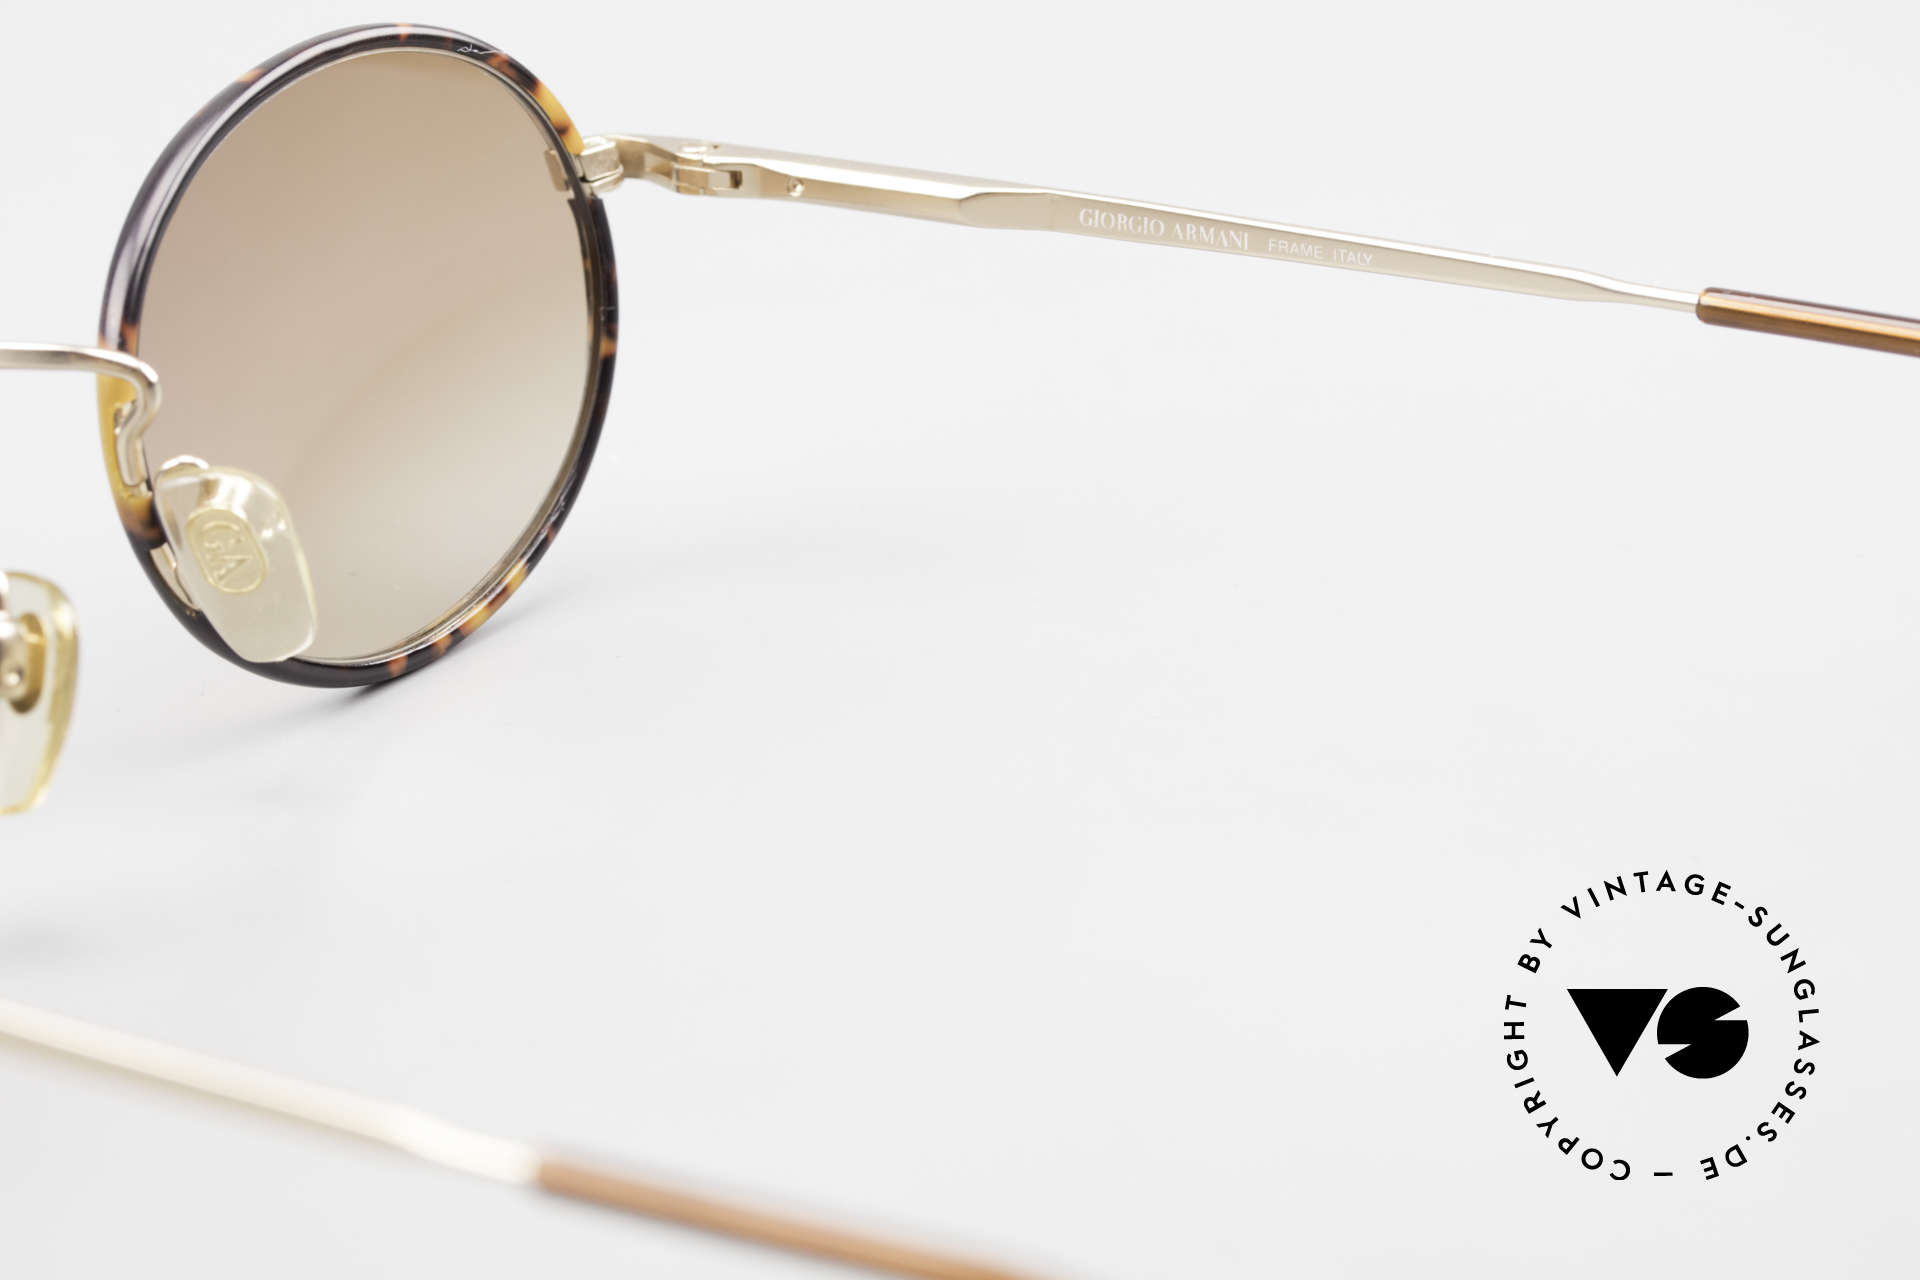 Giorgio Armani 235 Ovale Vintage Sonnenbrille, Größe: medium, Passend für Herren und Damen